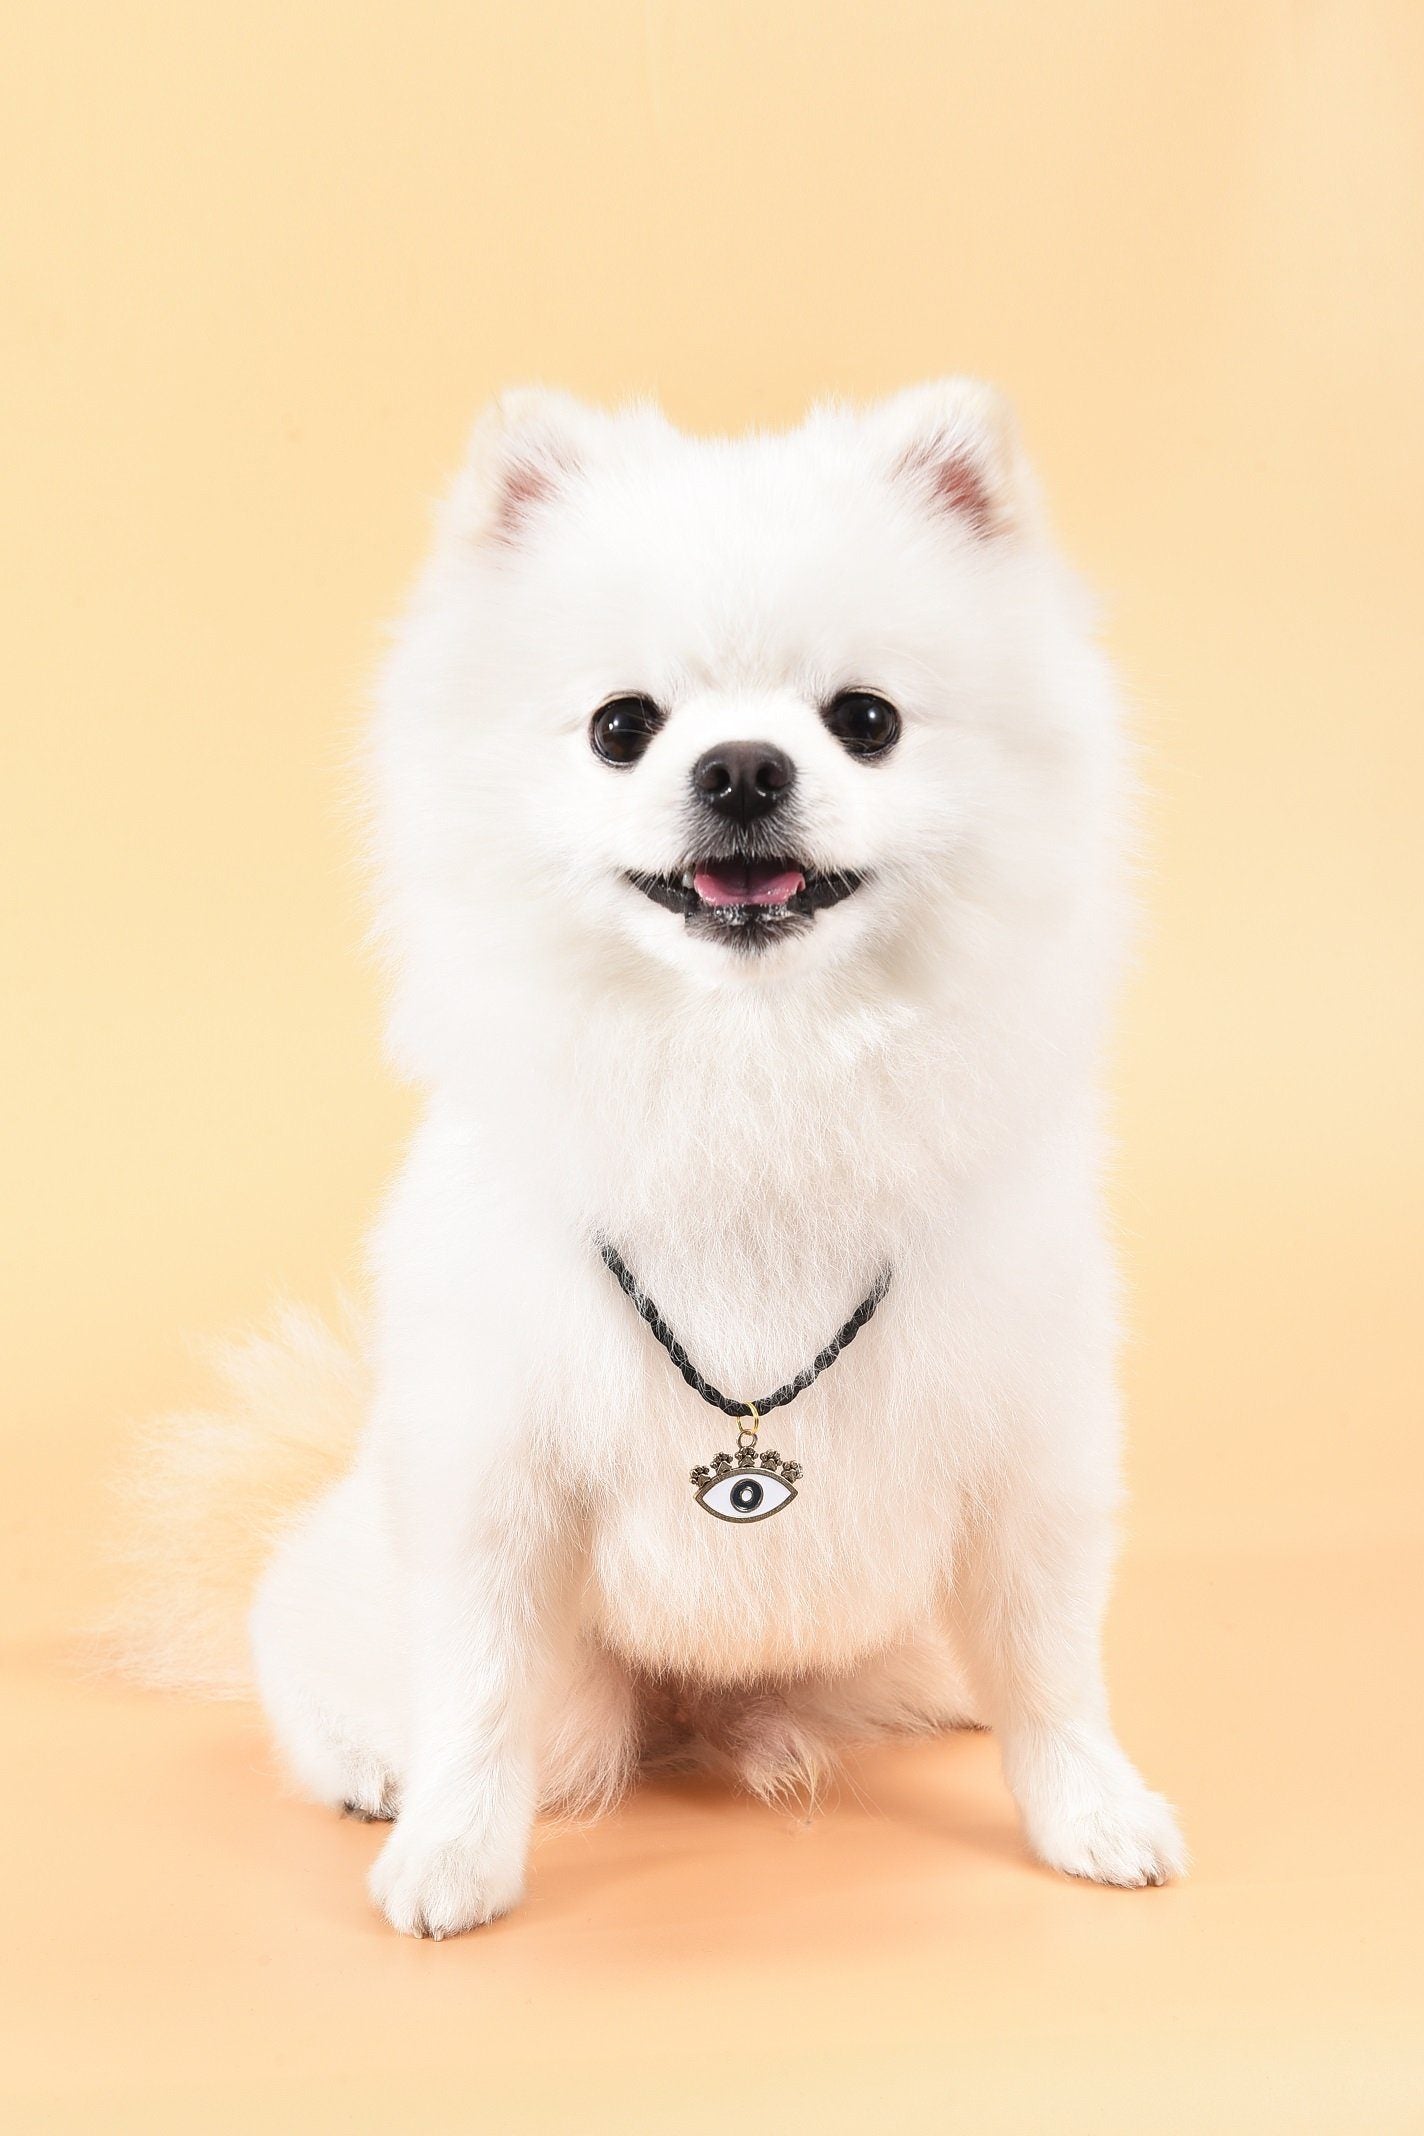 Hingebungsvoller Schutz - Bronze-Emaille Böses Auge Hundemarke